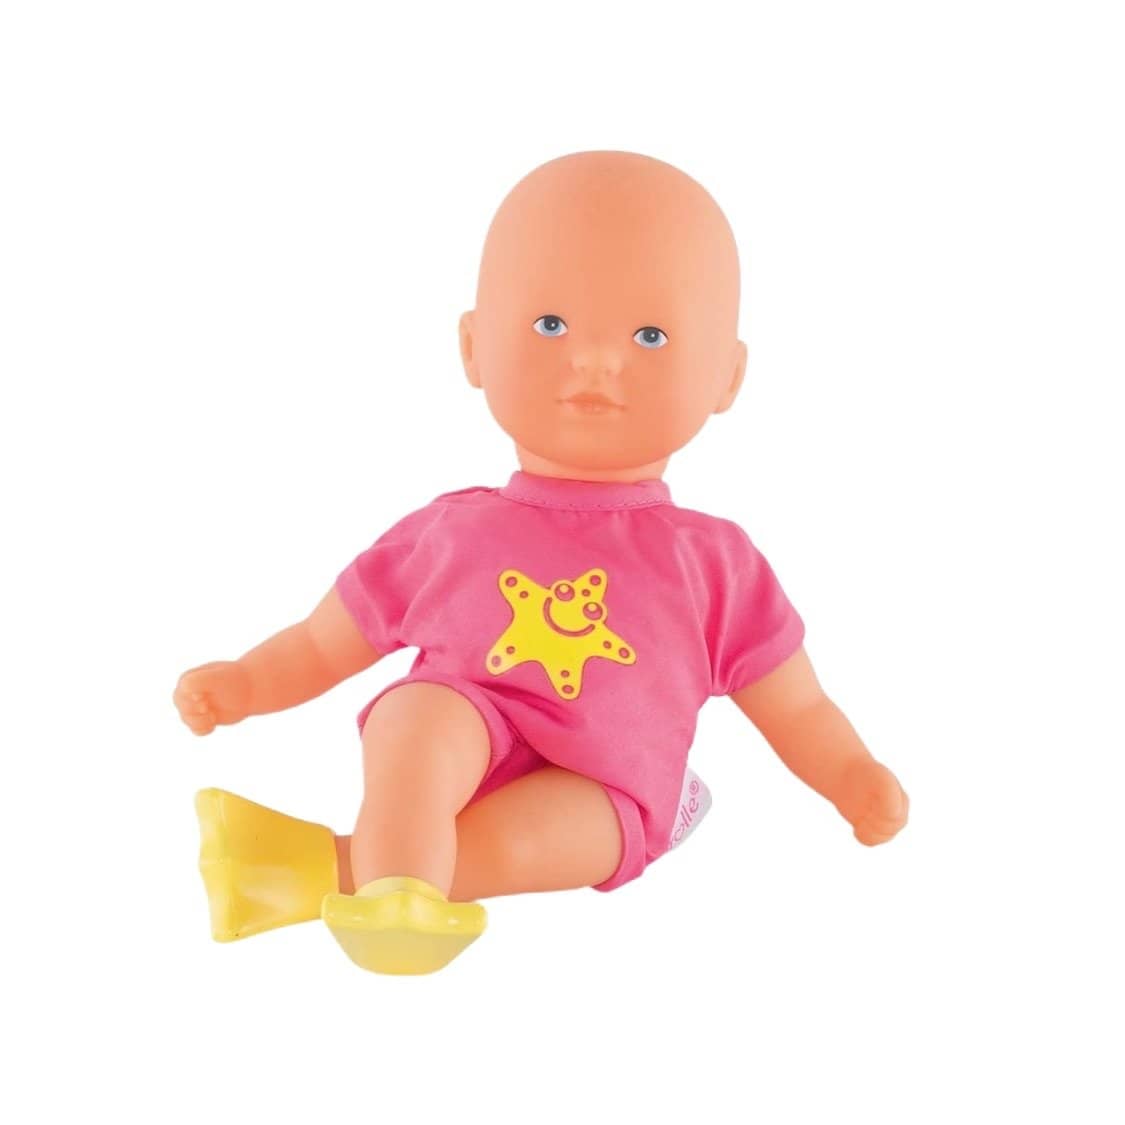 Mini Bath Pink - Corolle Mon Premier Poupon Toy Baby Doll-Kidding Around NYC